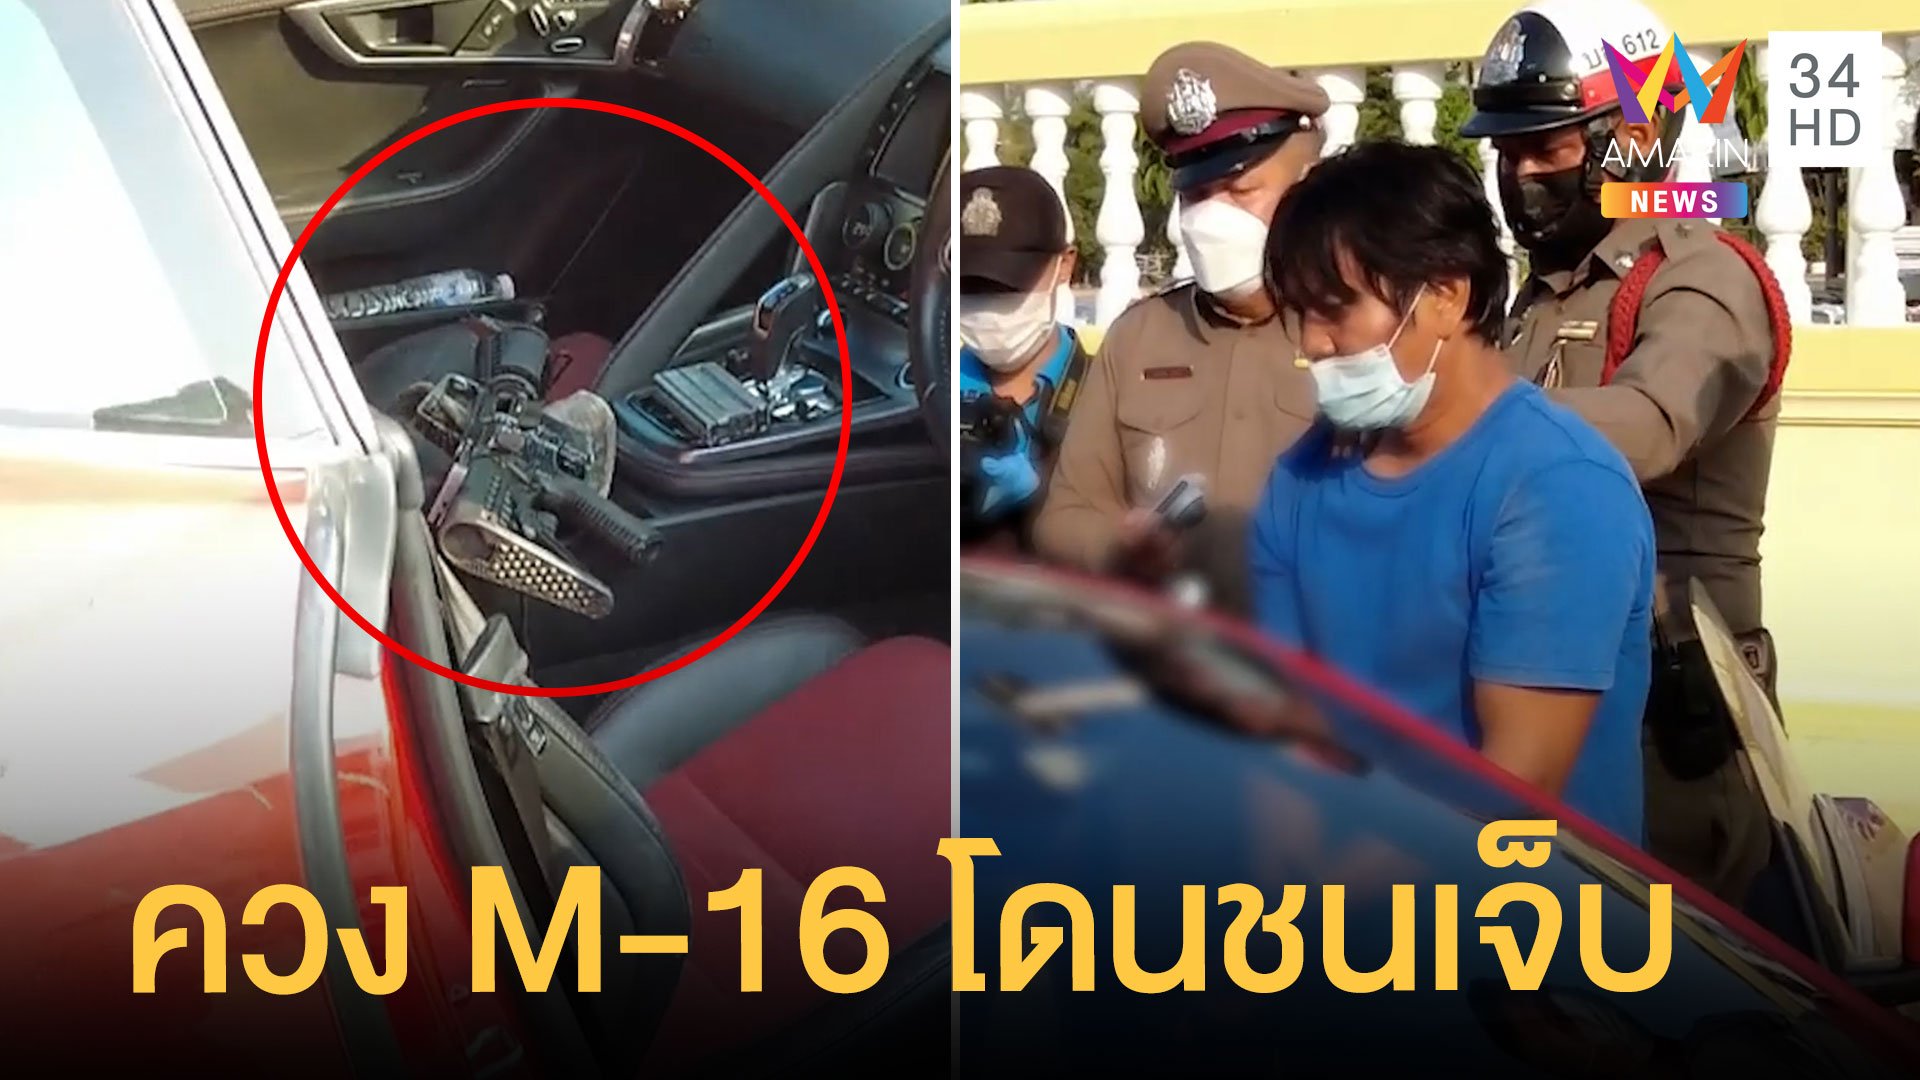 หนุ่มขับรถหรูควงปืน M-16 เคลียร์อริ แต่ถูกมอเตอร์ไซค์ชนเจ็บจนปืนหล่น | ข่าวเที่ยงอมรินทร์ | 10 ม.ค. 65 | AMARIN TVHD34